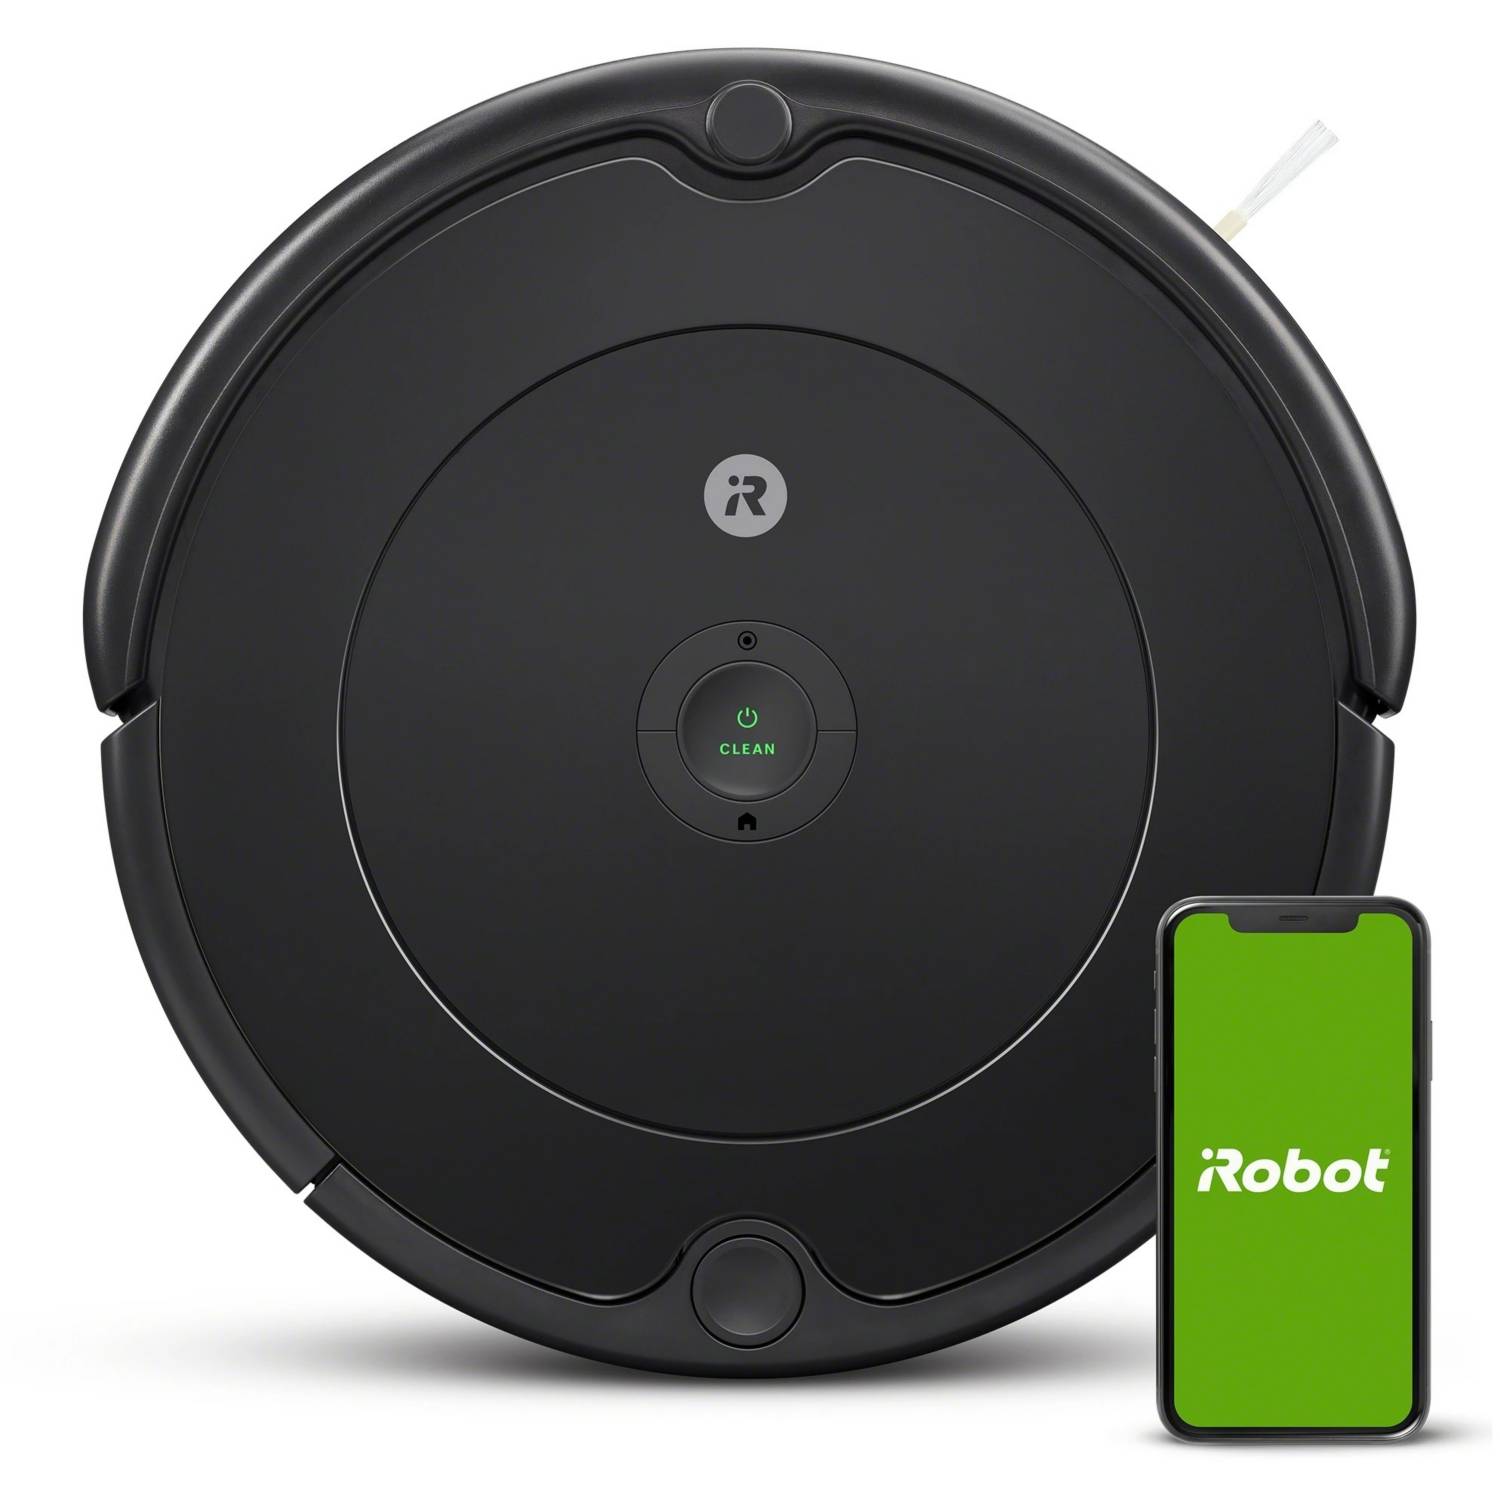 Aspiradora Robot iRobot Roomba 960 - Aftec Chile